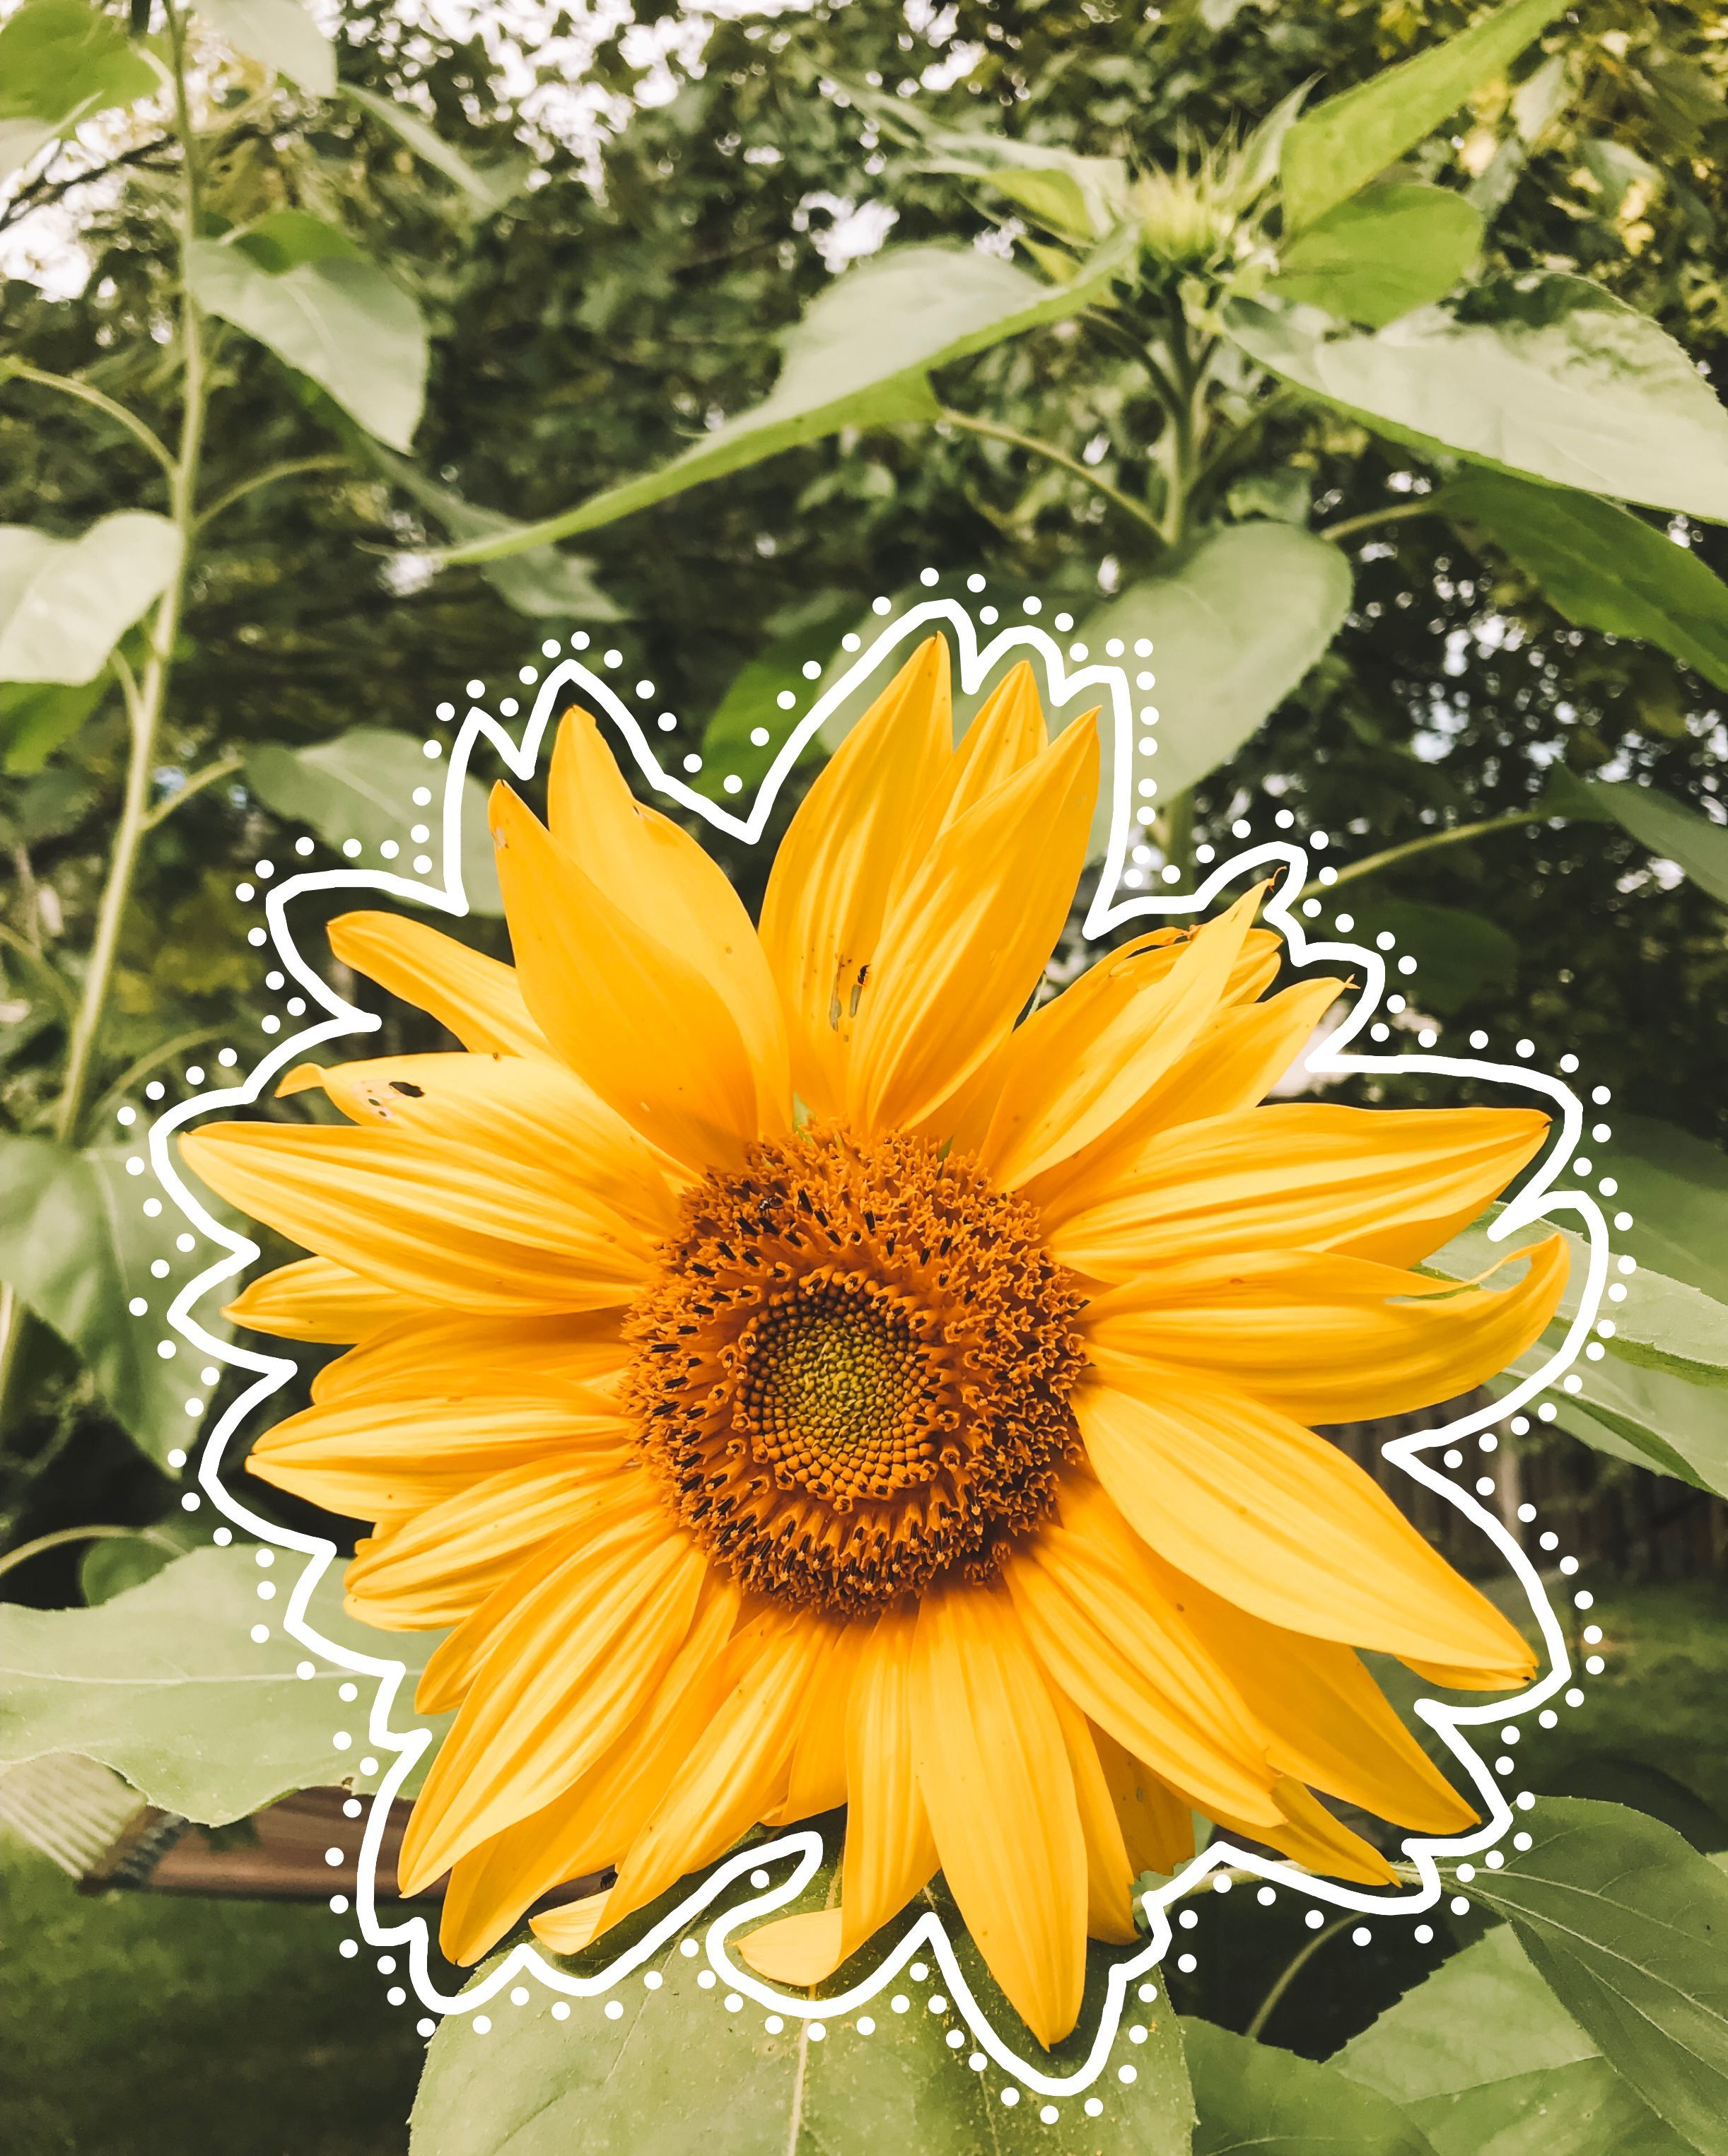 Vsco Sunflower Wallpapers